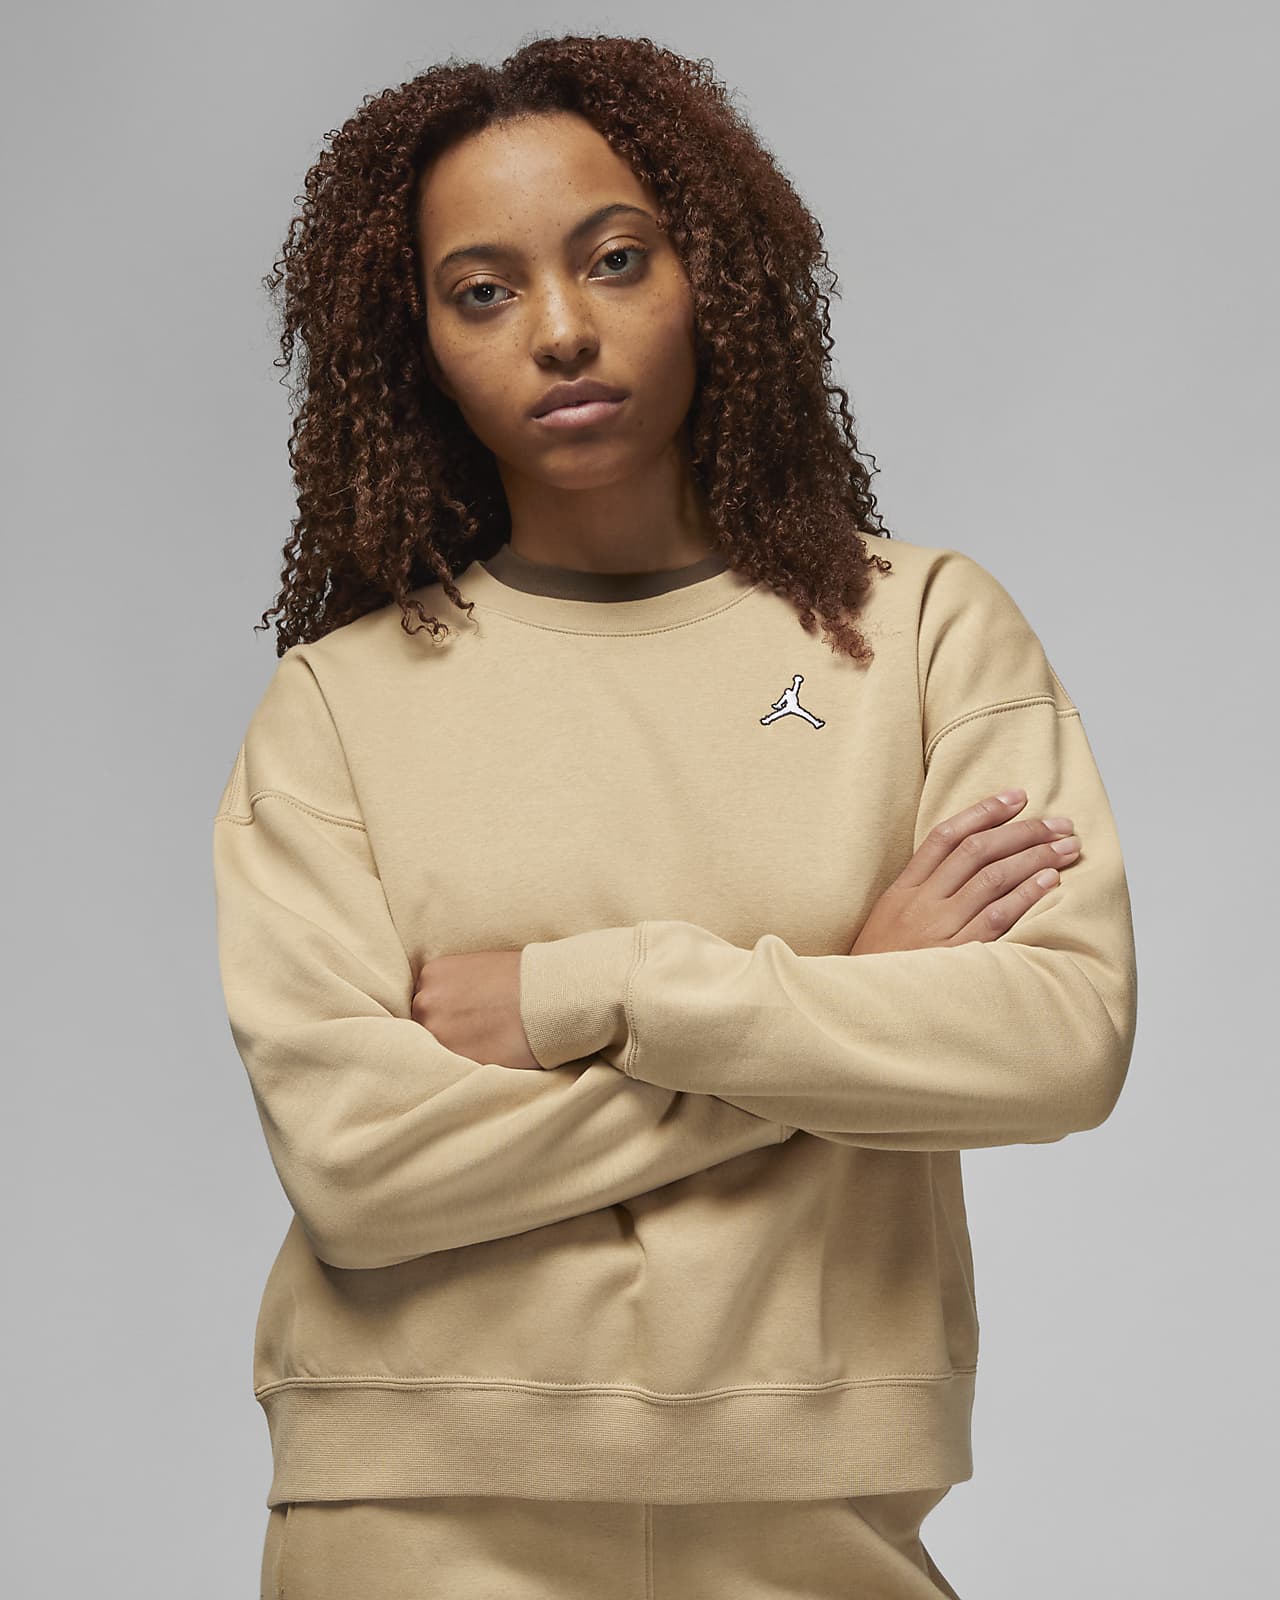 Jordan Brooklyn Women's Fleece Crew-Neck Sweatshirt